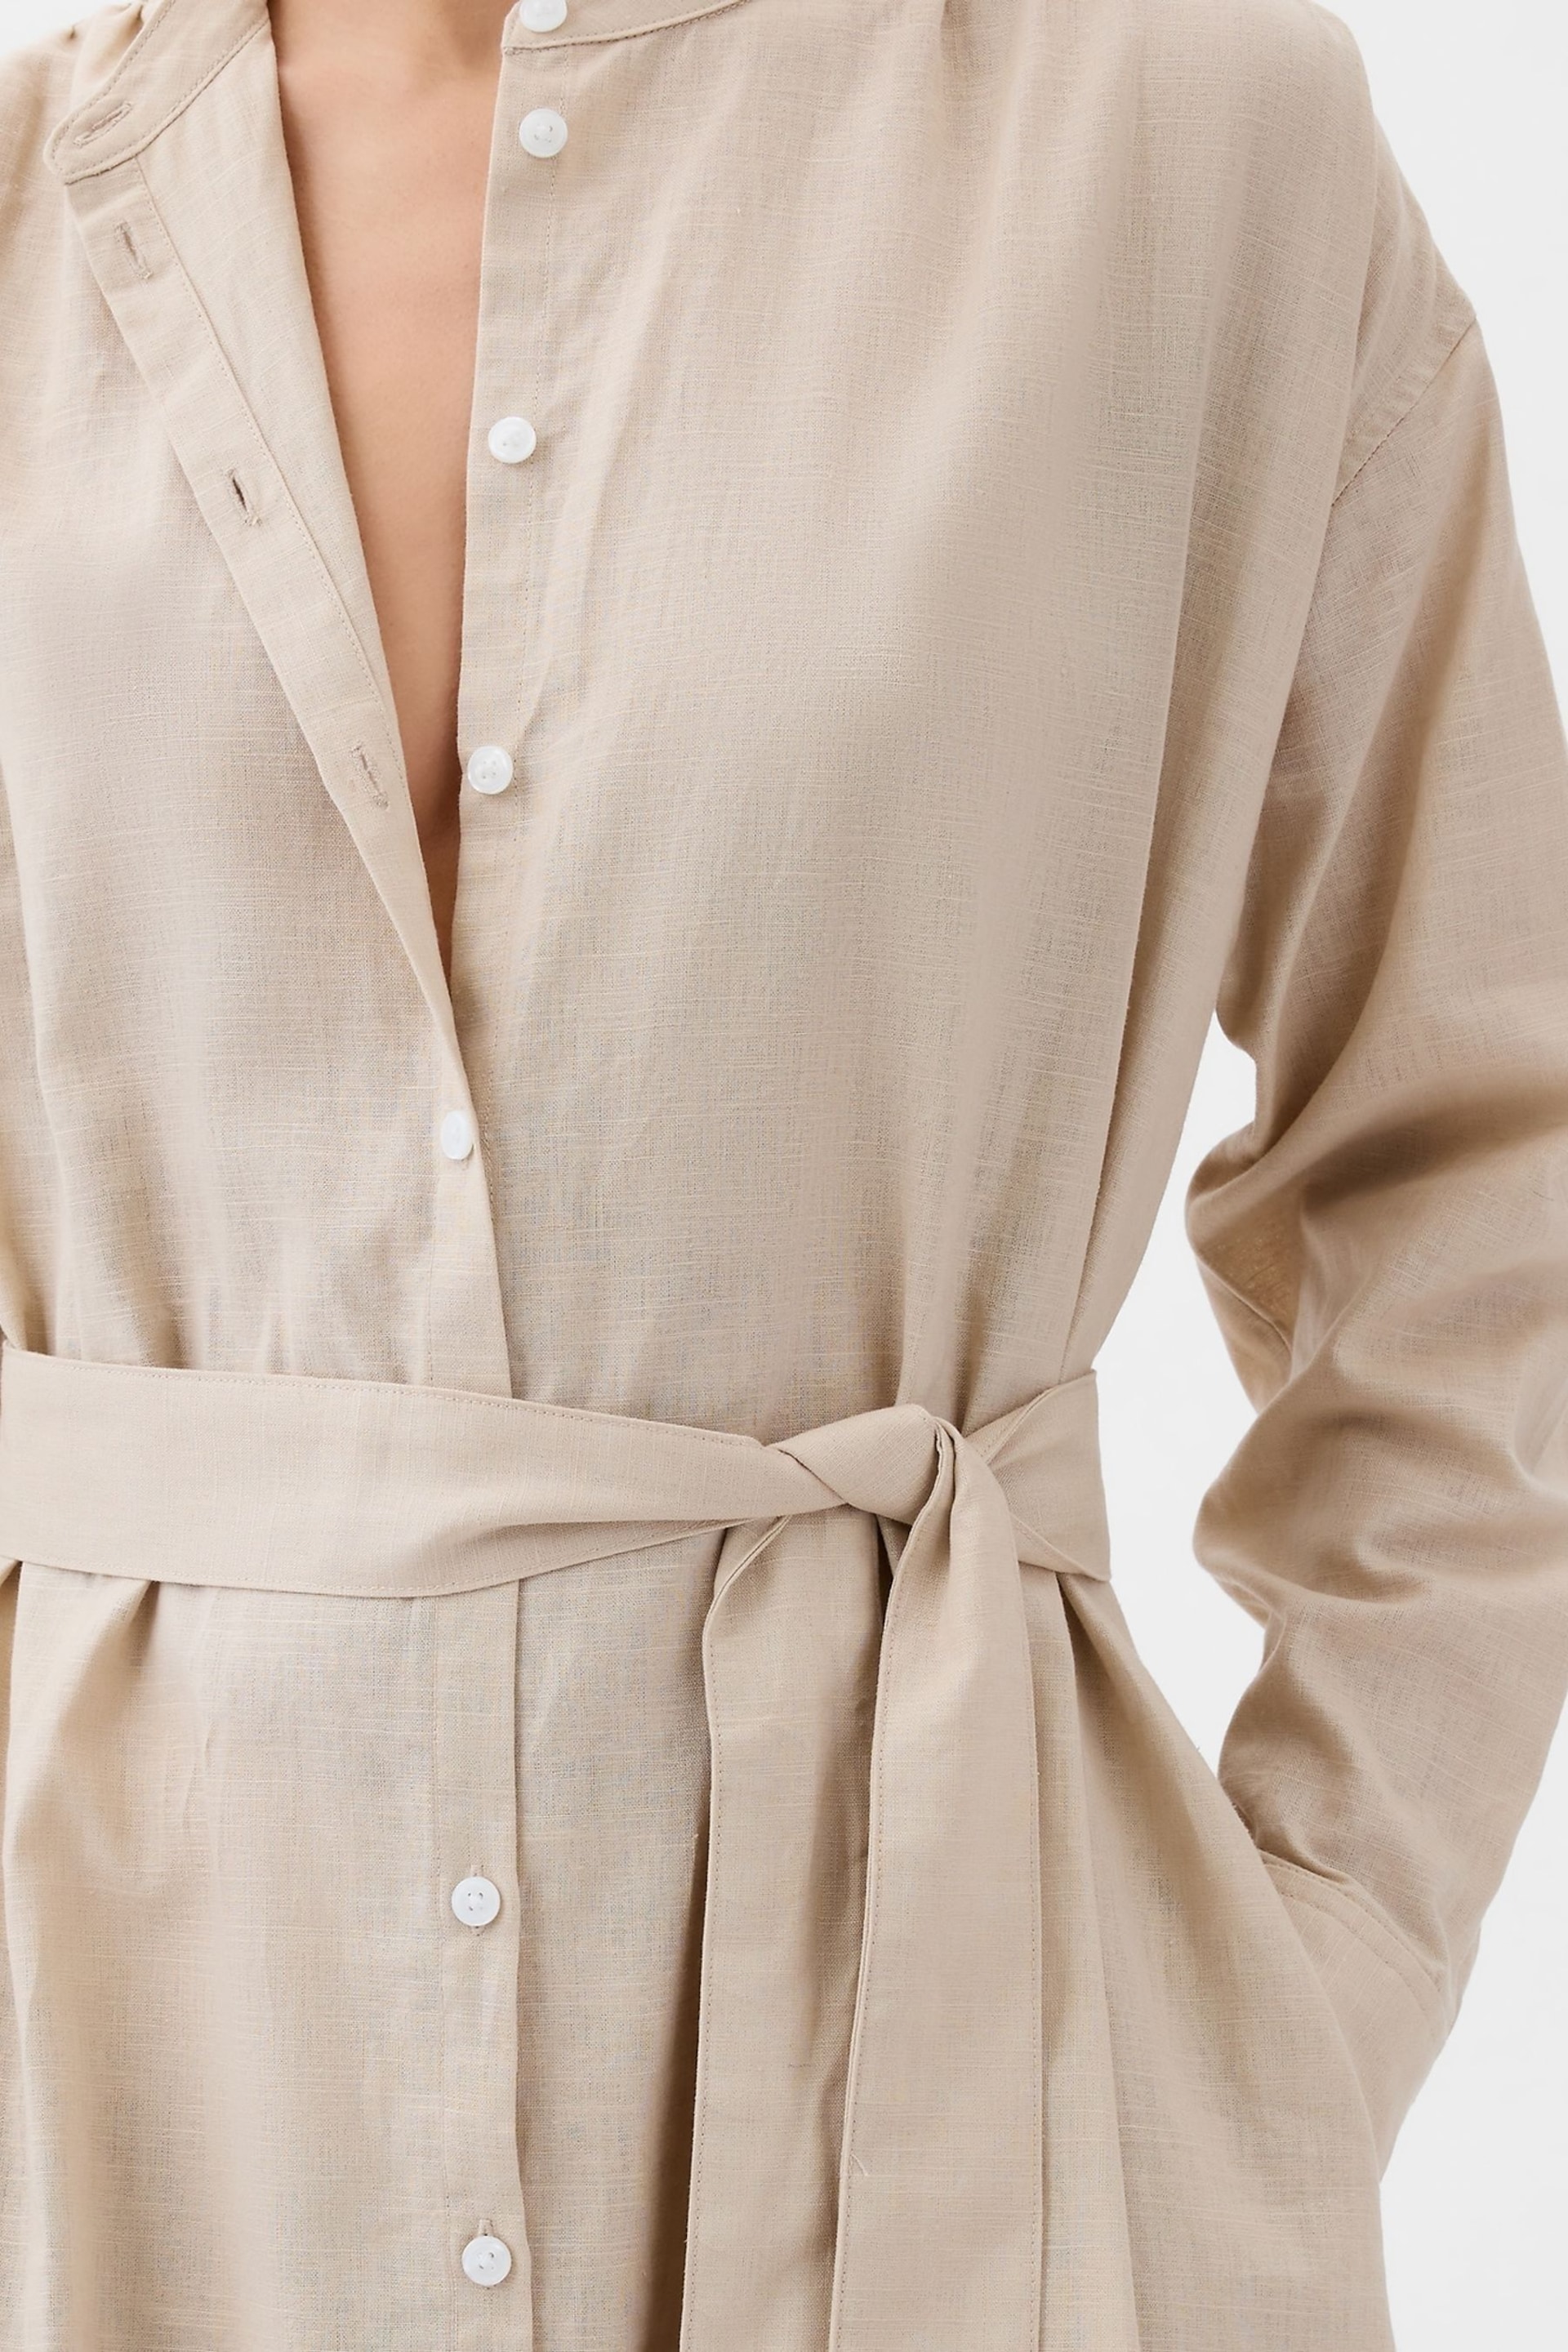 Gap Neutral Linen Blend Long Sleeve Shirt Dress - Image 4 of 5